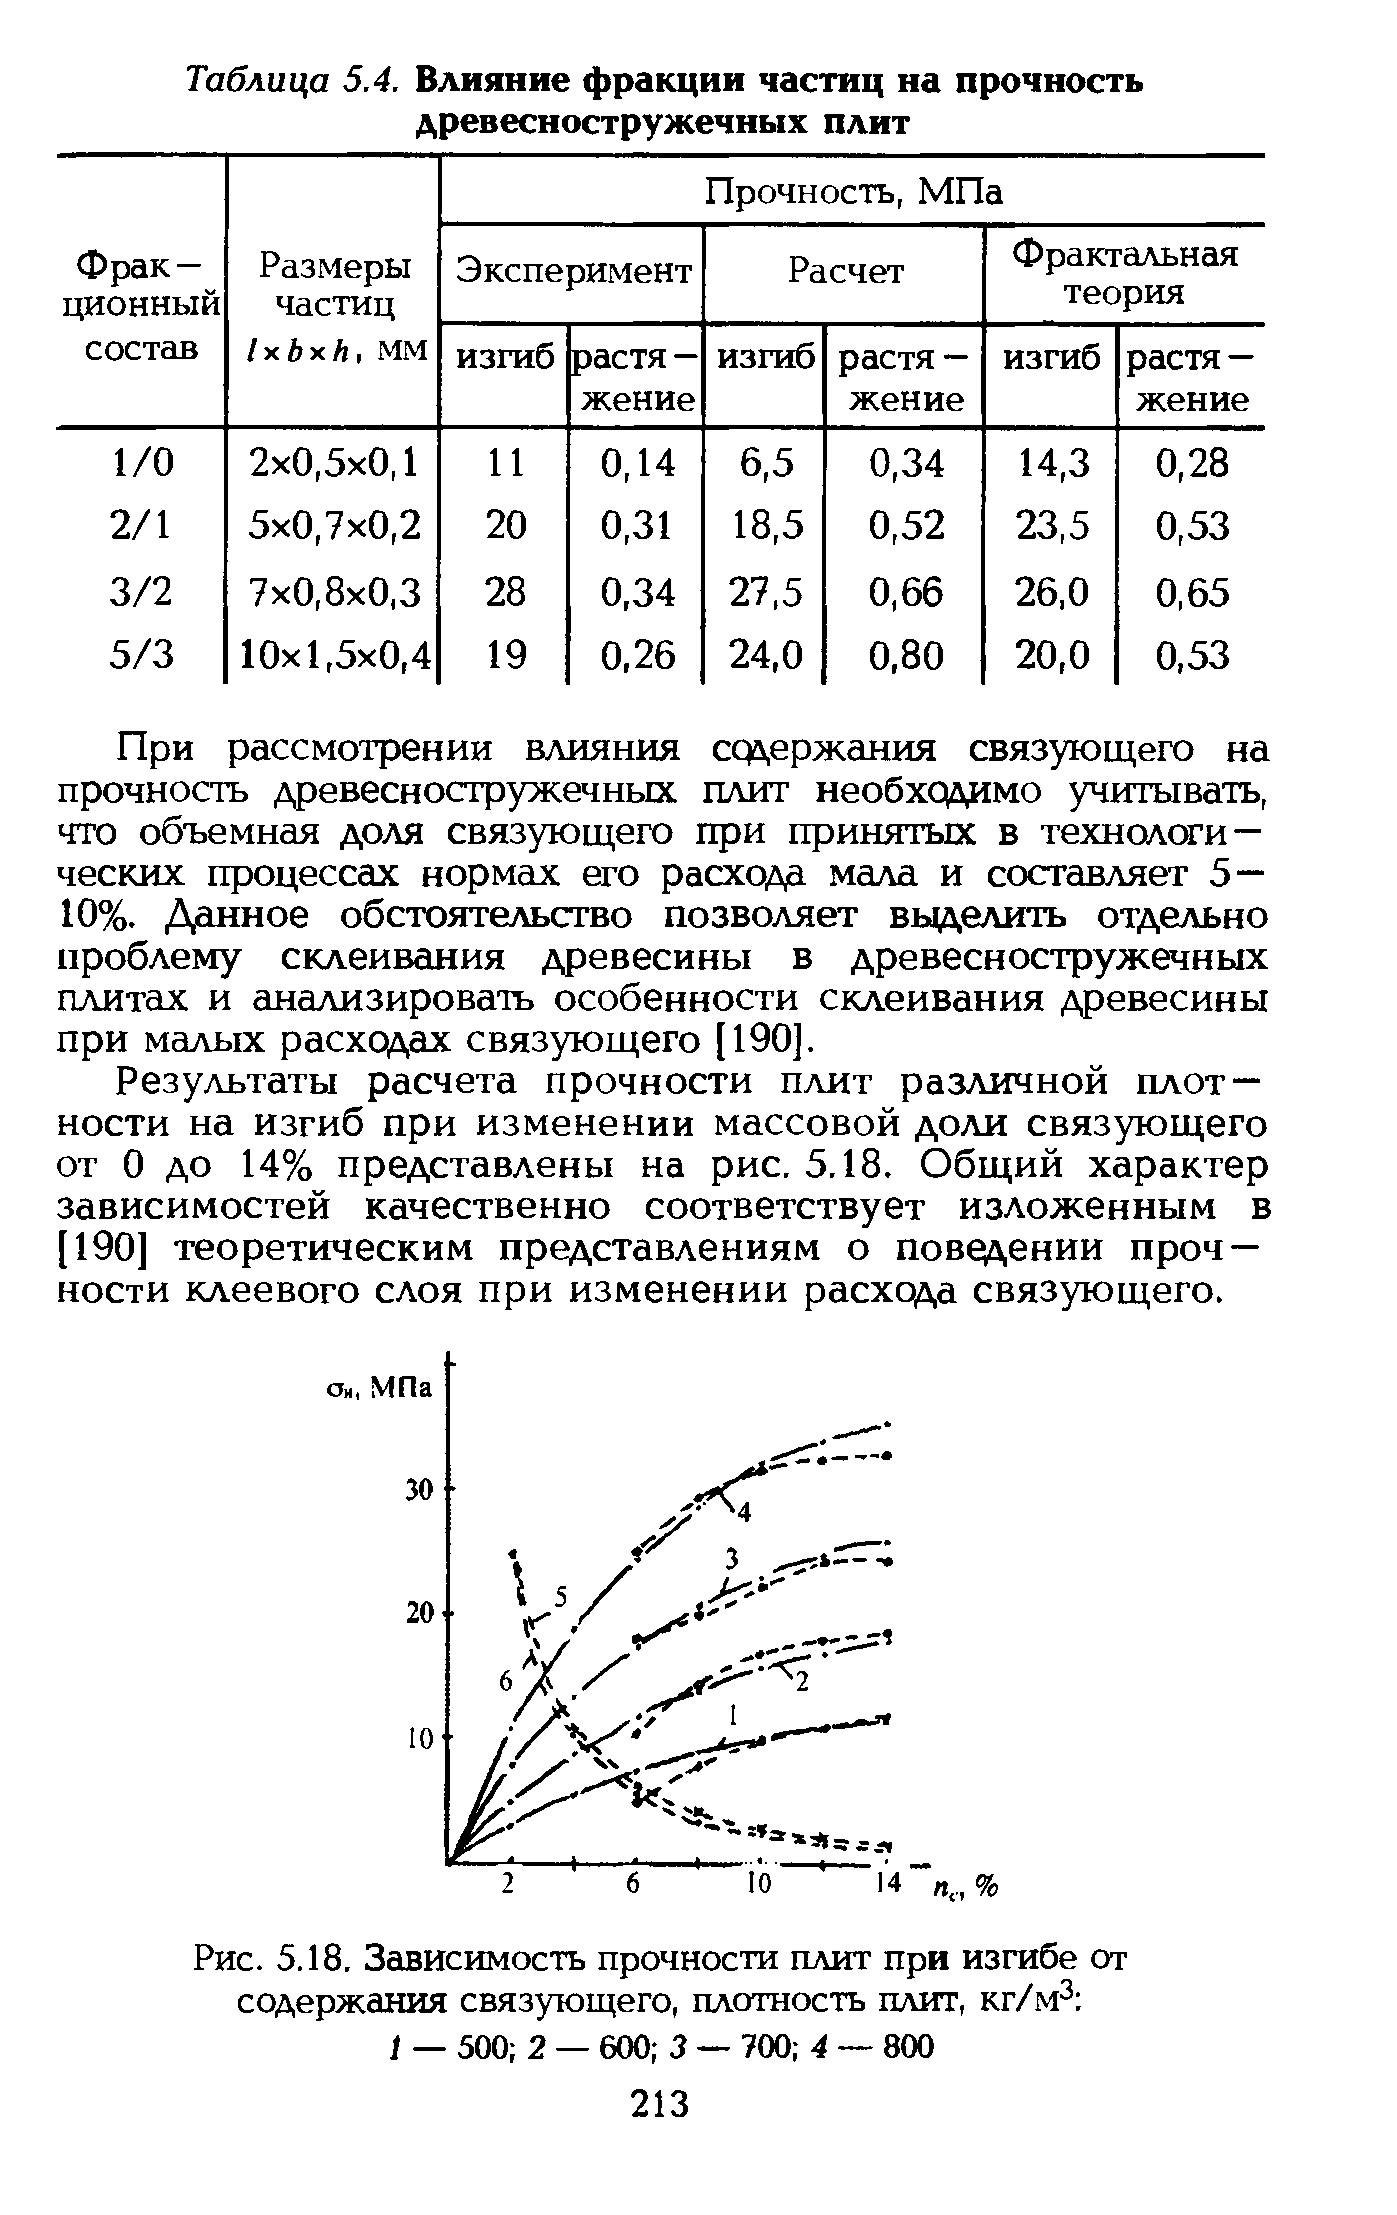 Таблица 5.4. Влияние <a href="/info/362757">фракции частиц</a> на прочность древесностружечных плит
